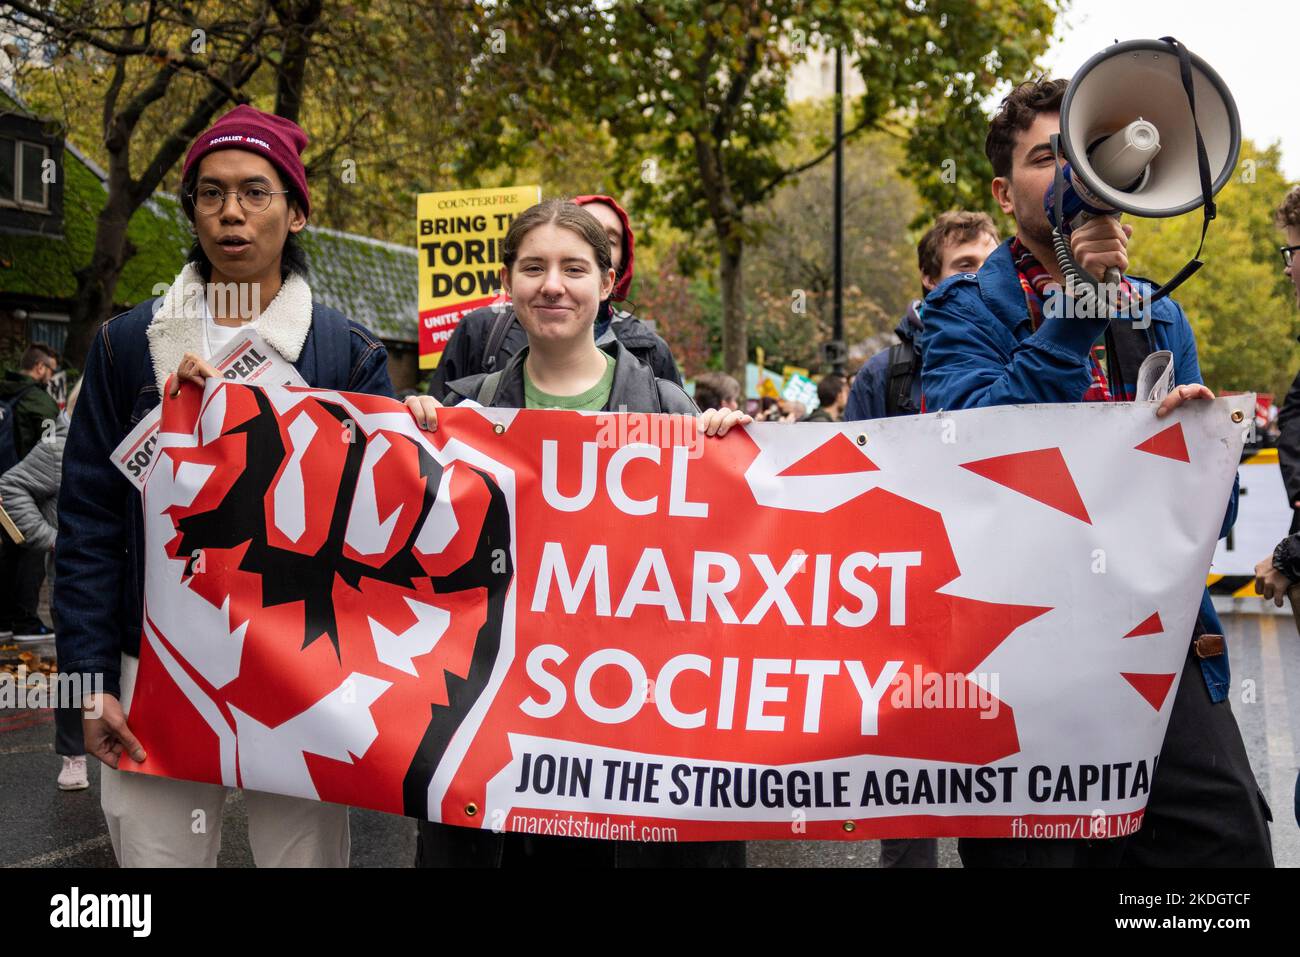 La società marxista UCL si è schierata a Londra per protestare contro le misure di austerità del governo conservatore, chiedendo elezioni generali e salari più alti. Foto Stock